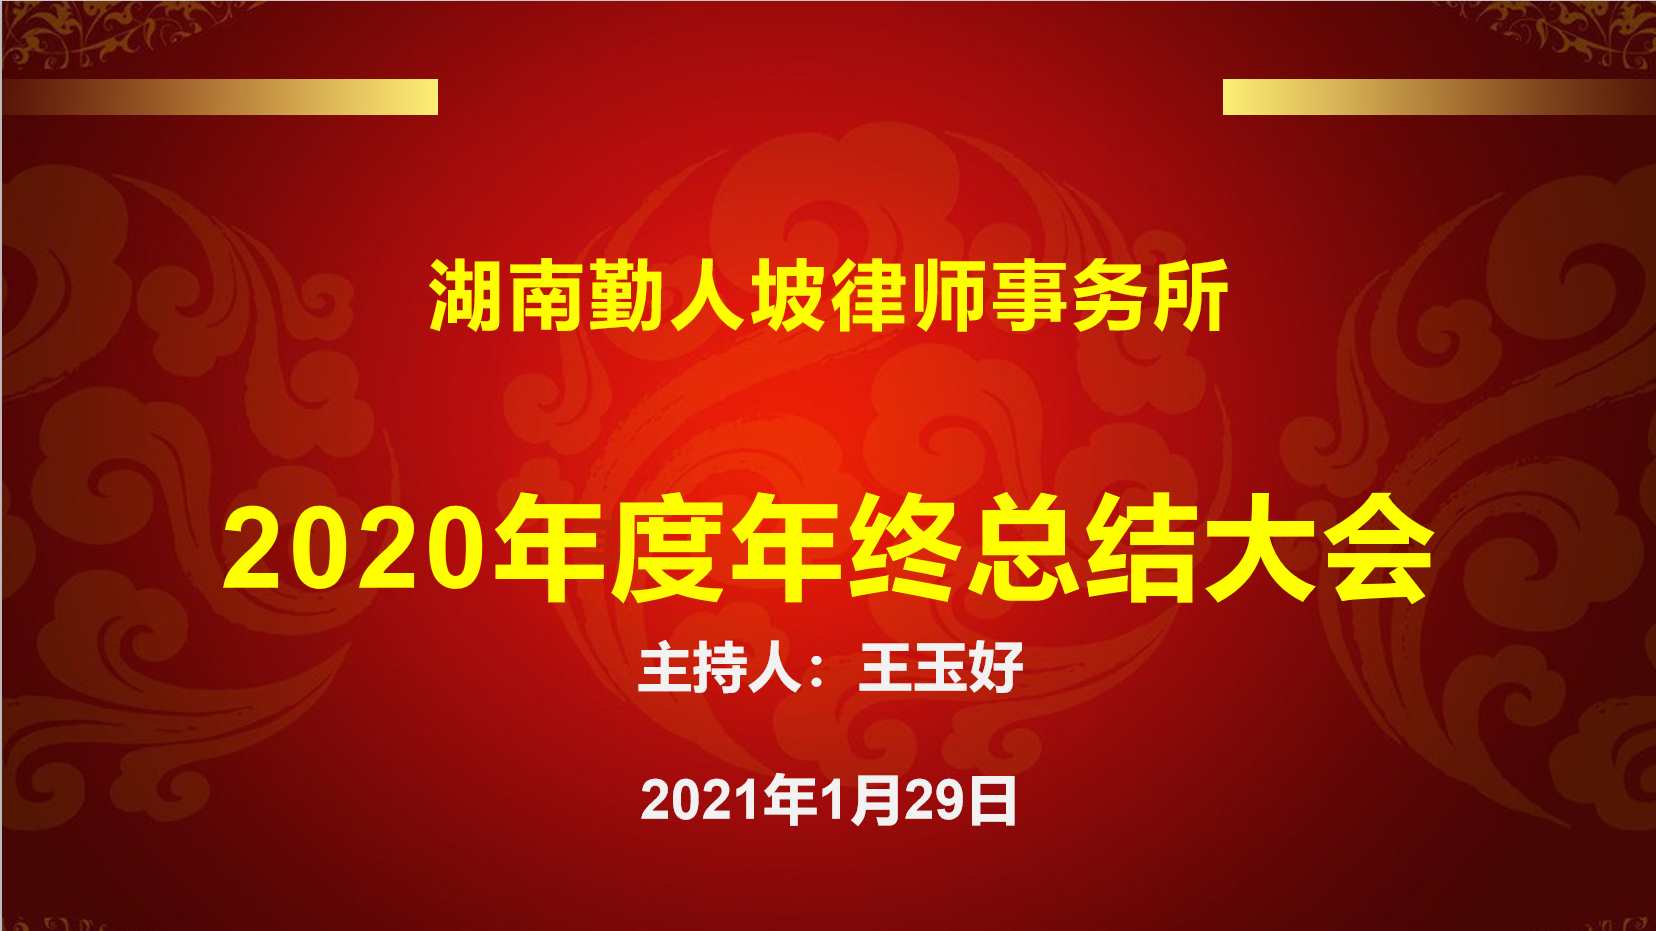 湖南勤人坡律师事务所2020年度年终总结大会圆满召开